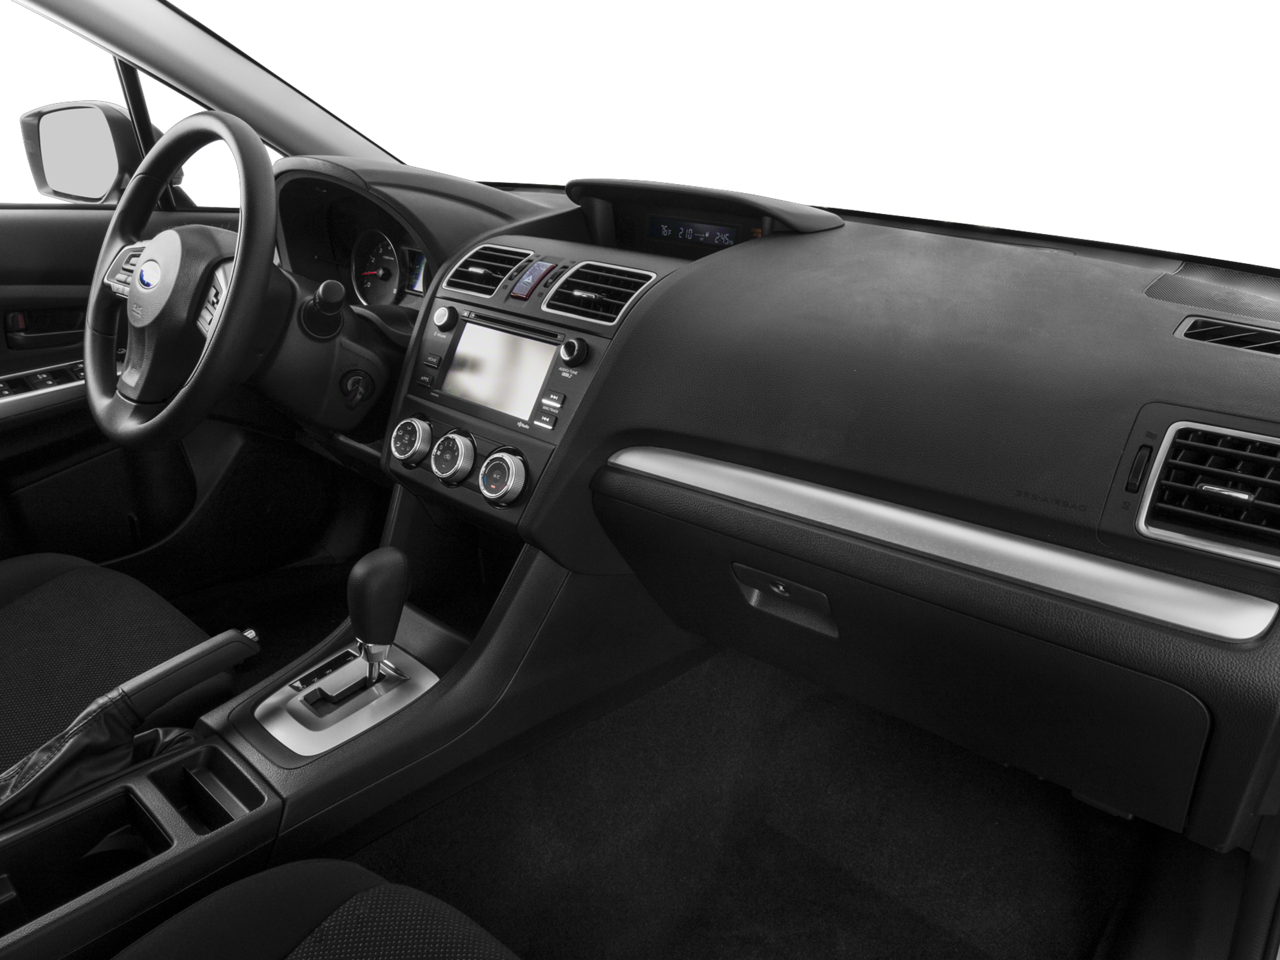 2015 Subaru Impreza 2.0i